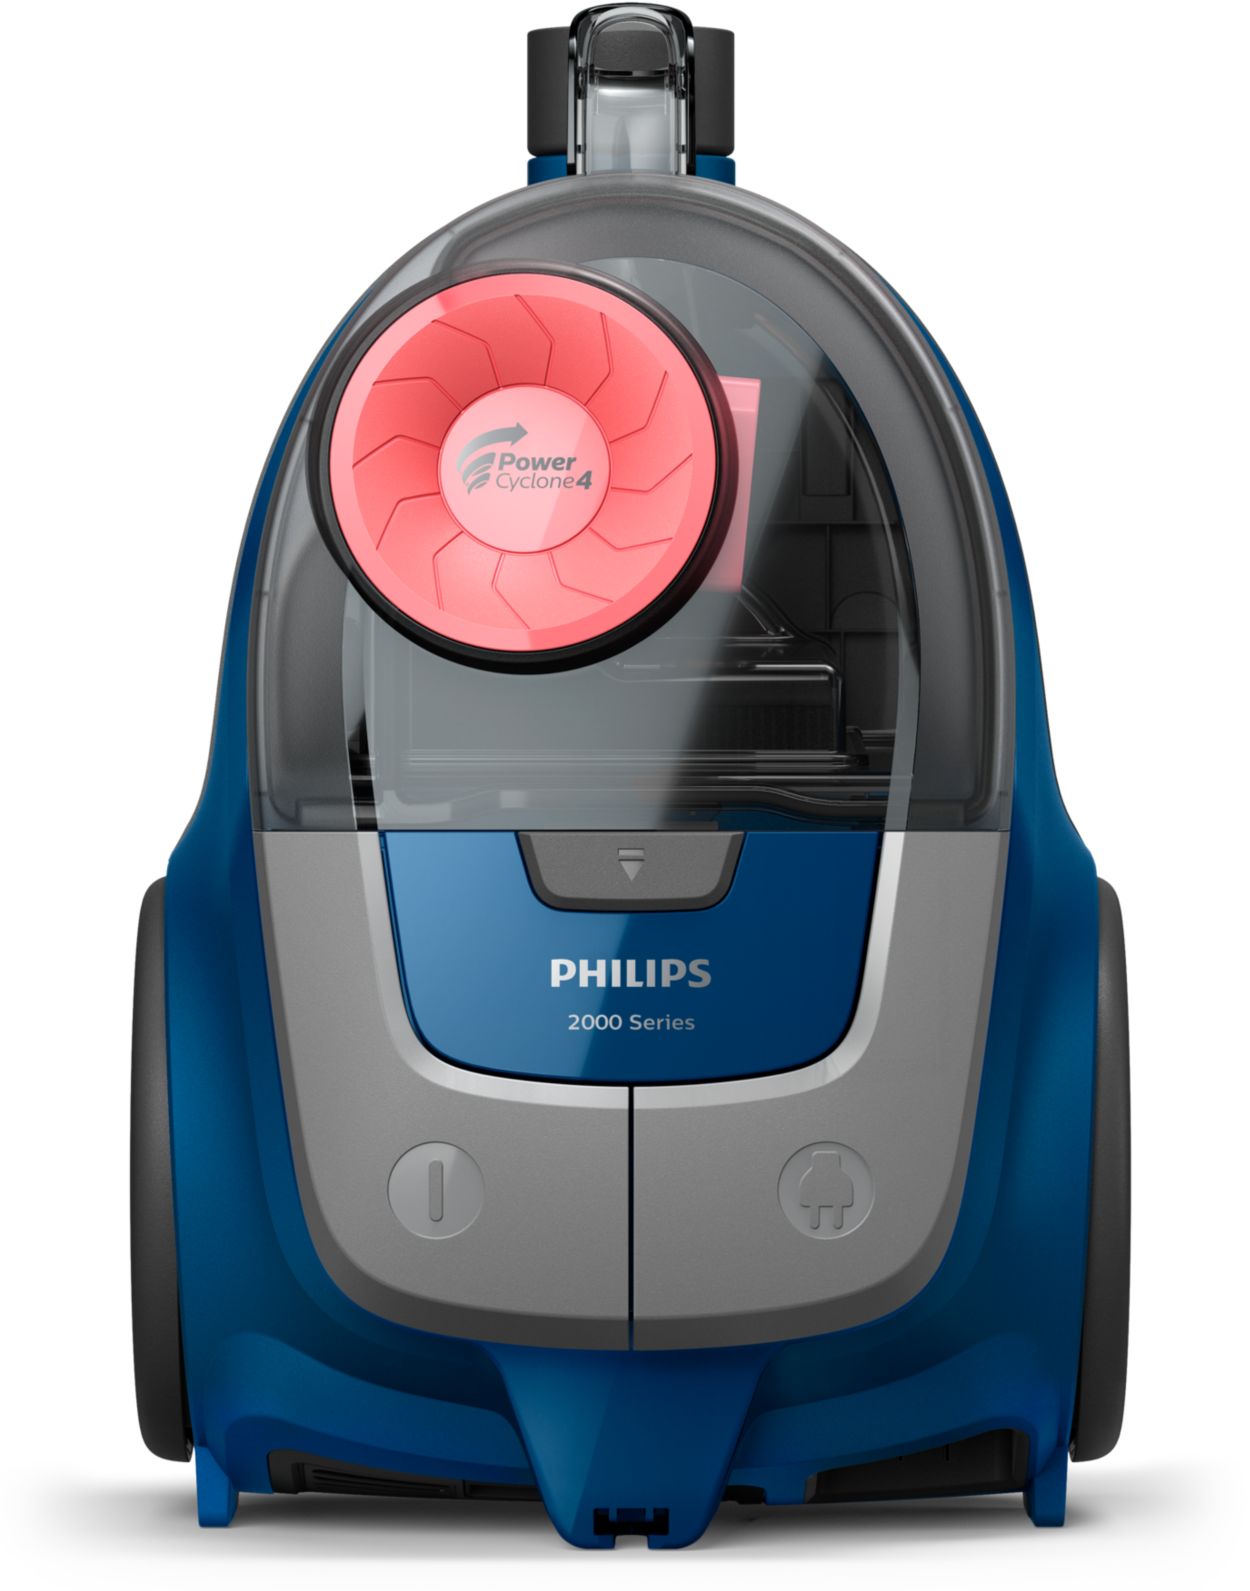 Aspirador sin bolsa  Philips XB2123/09, 850 W, 1.3 l, Tecnología  PowerCyclone 4, Cable9m, Compacto y ligero, Azul